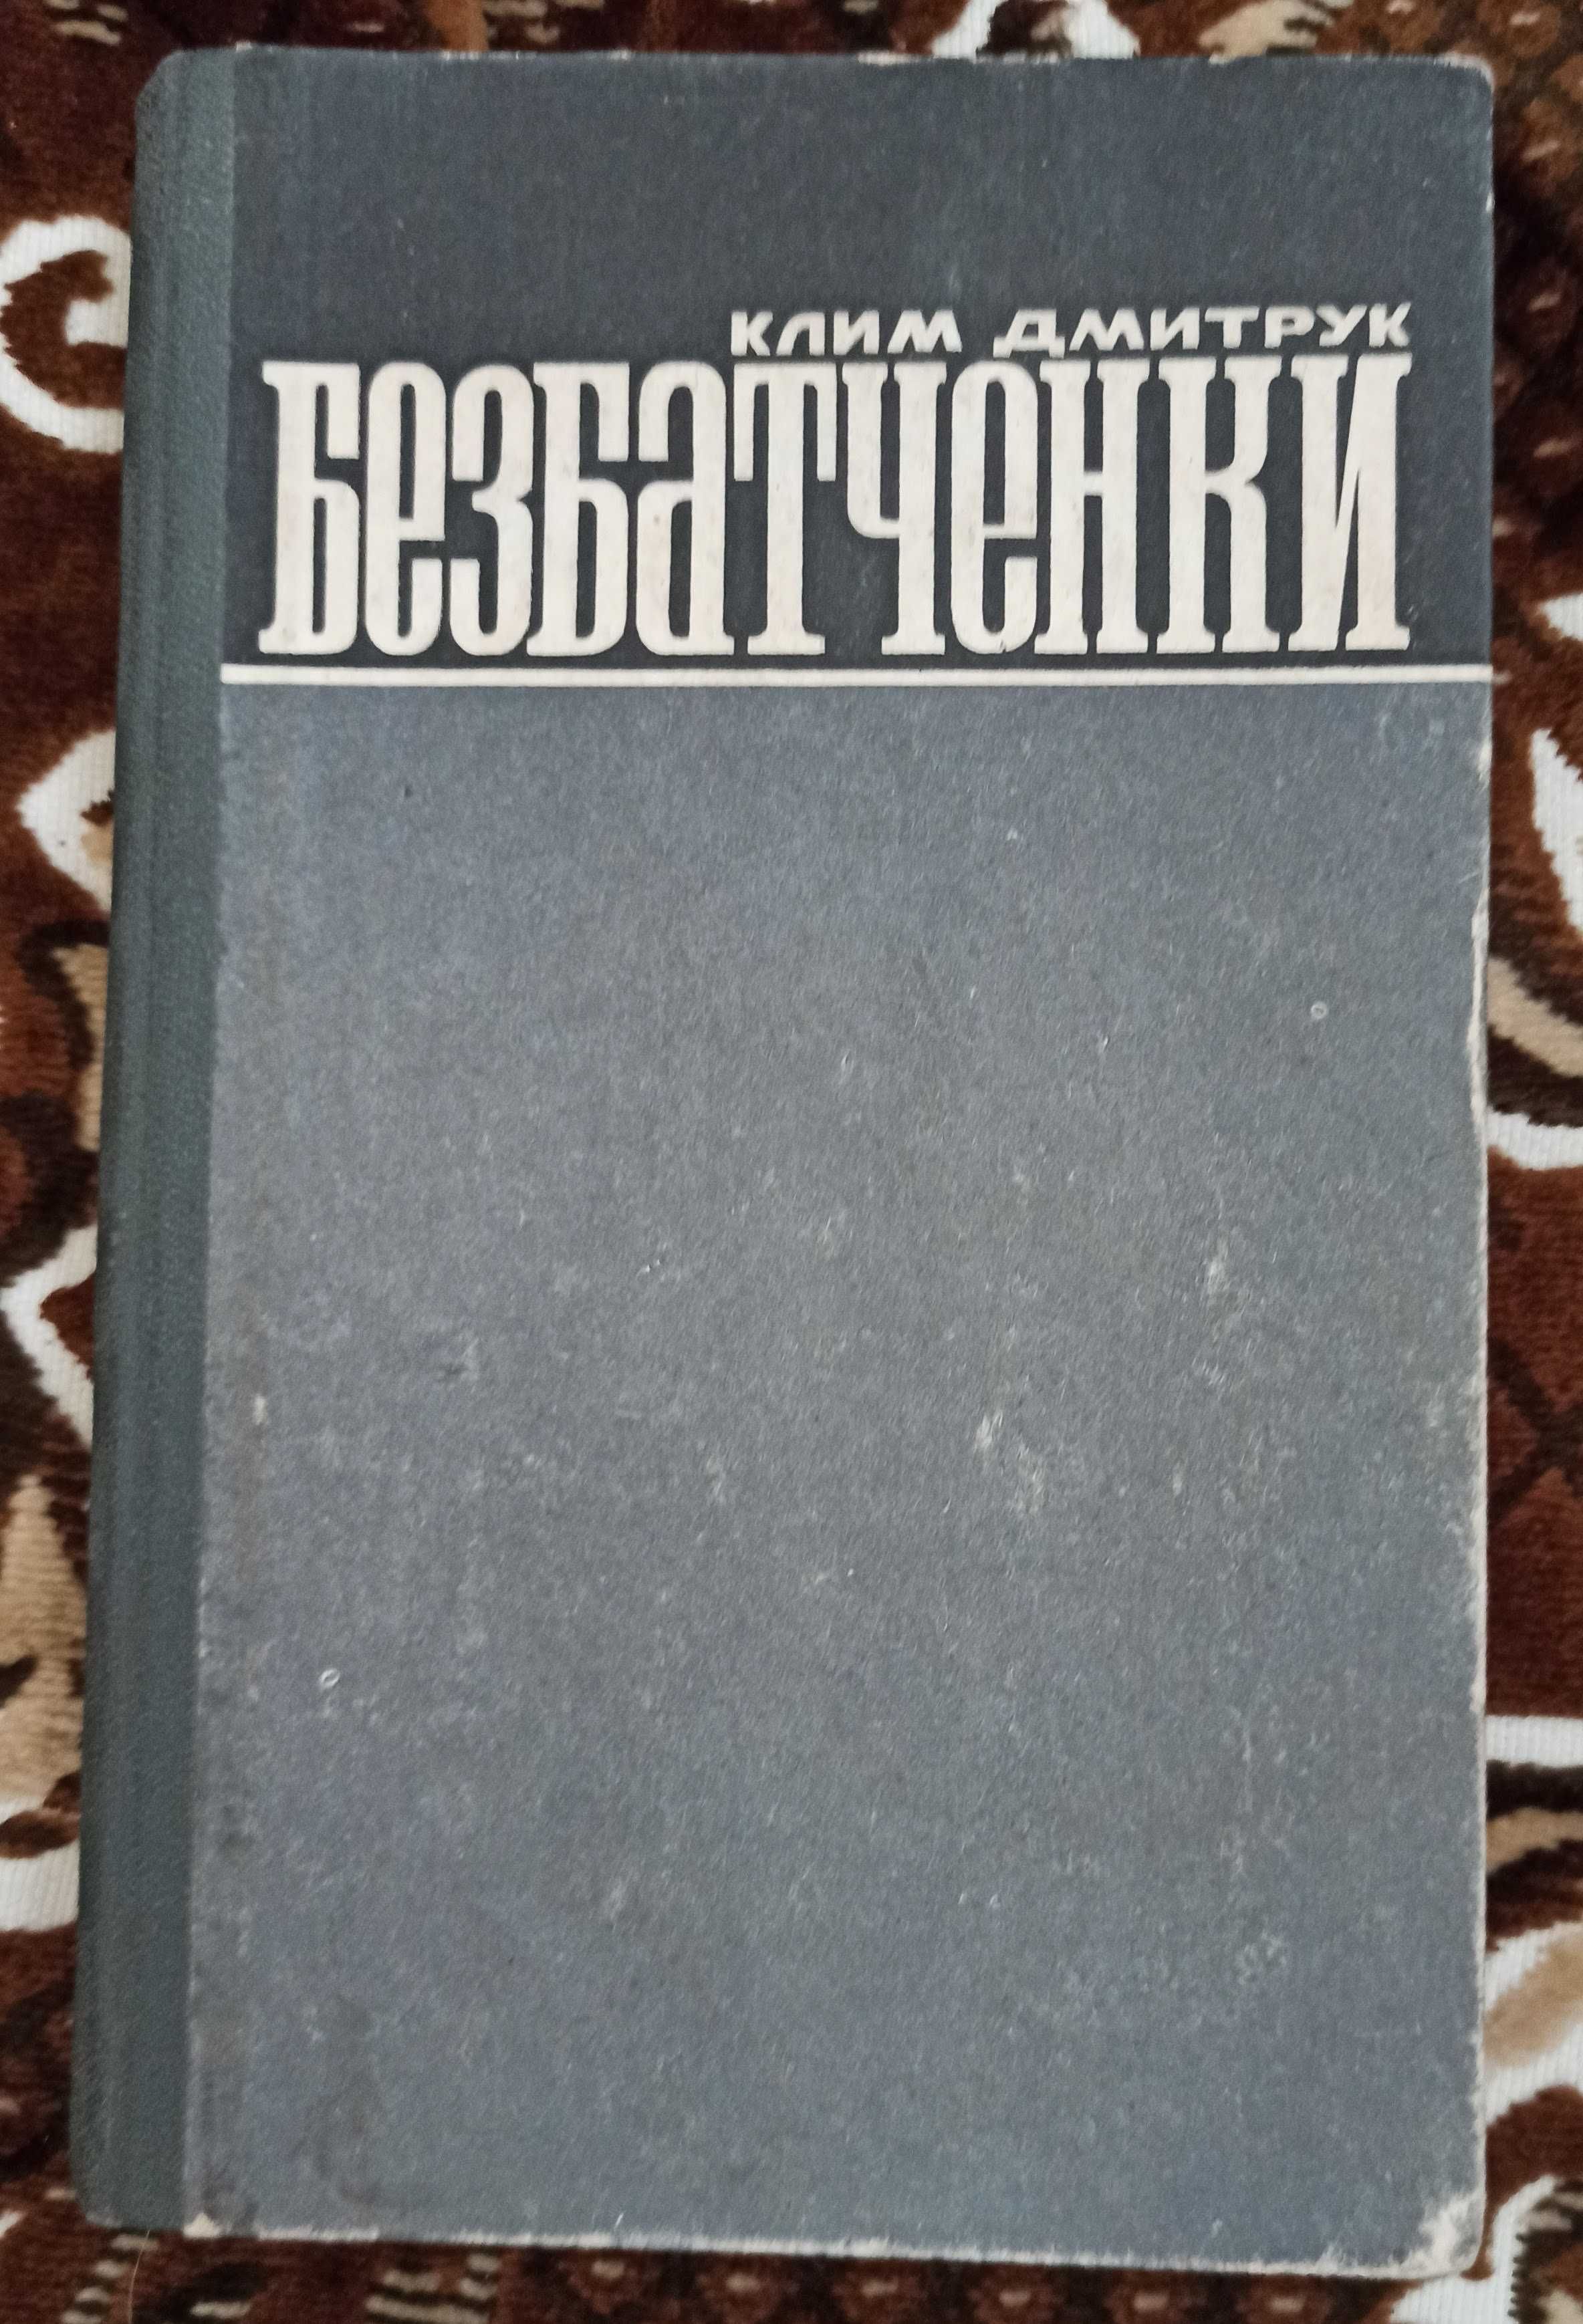 Радянська книга про ОУН Клим Дмитрук "Безбатченки" 1974 рік Львів